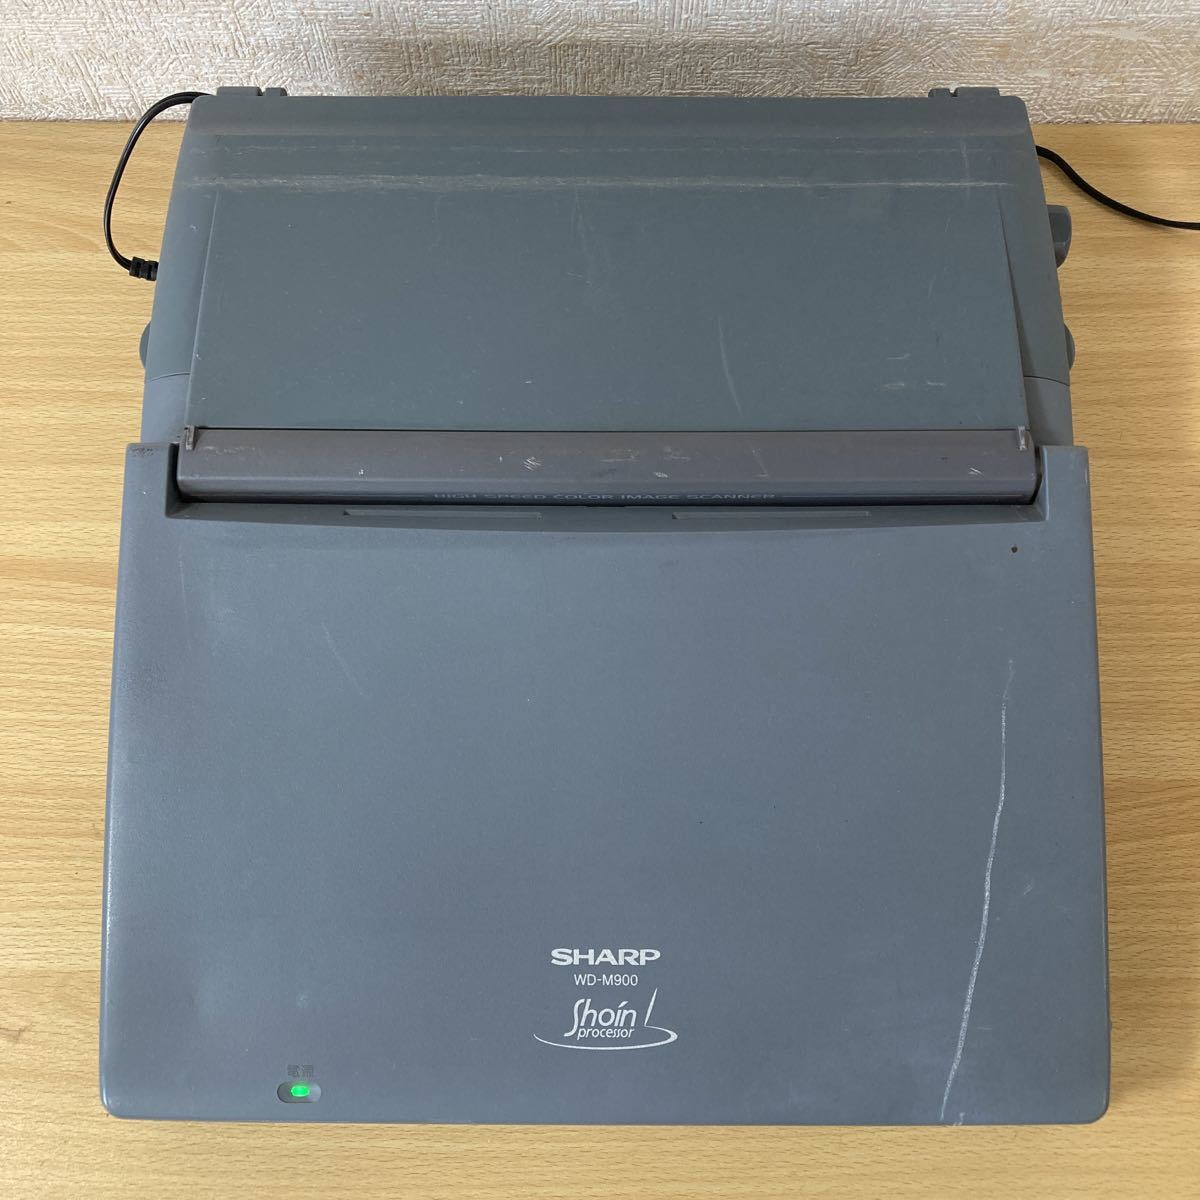 SHARP ワープロ 書院processor WD-M900 ジャンク品-